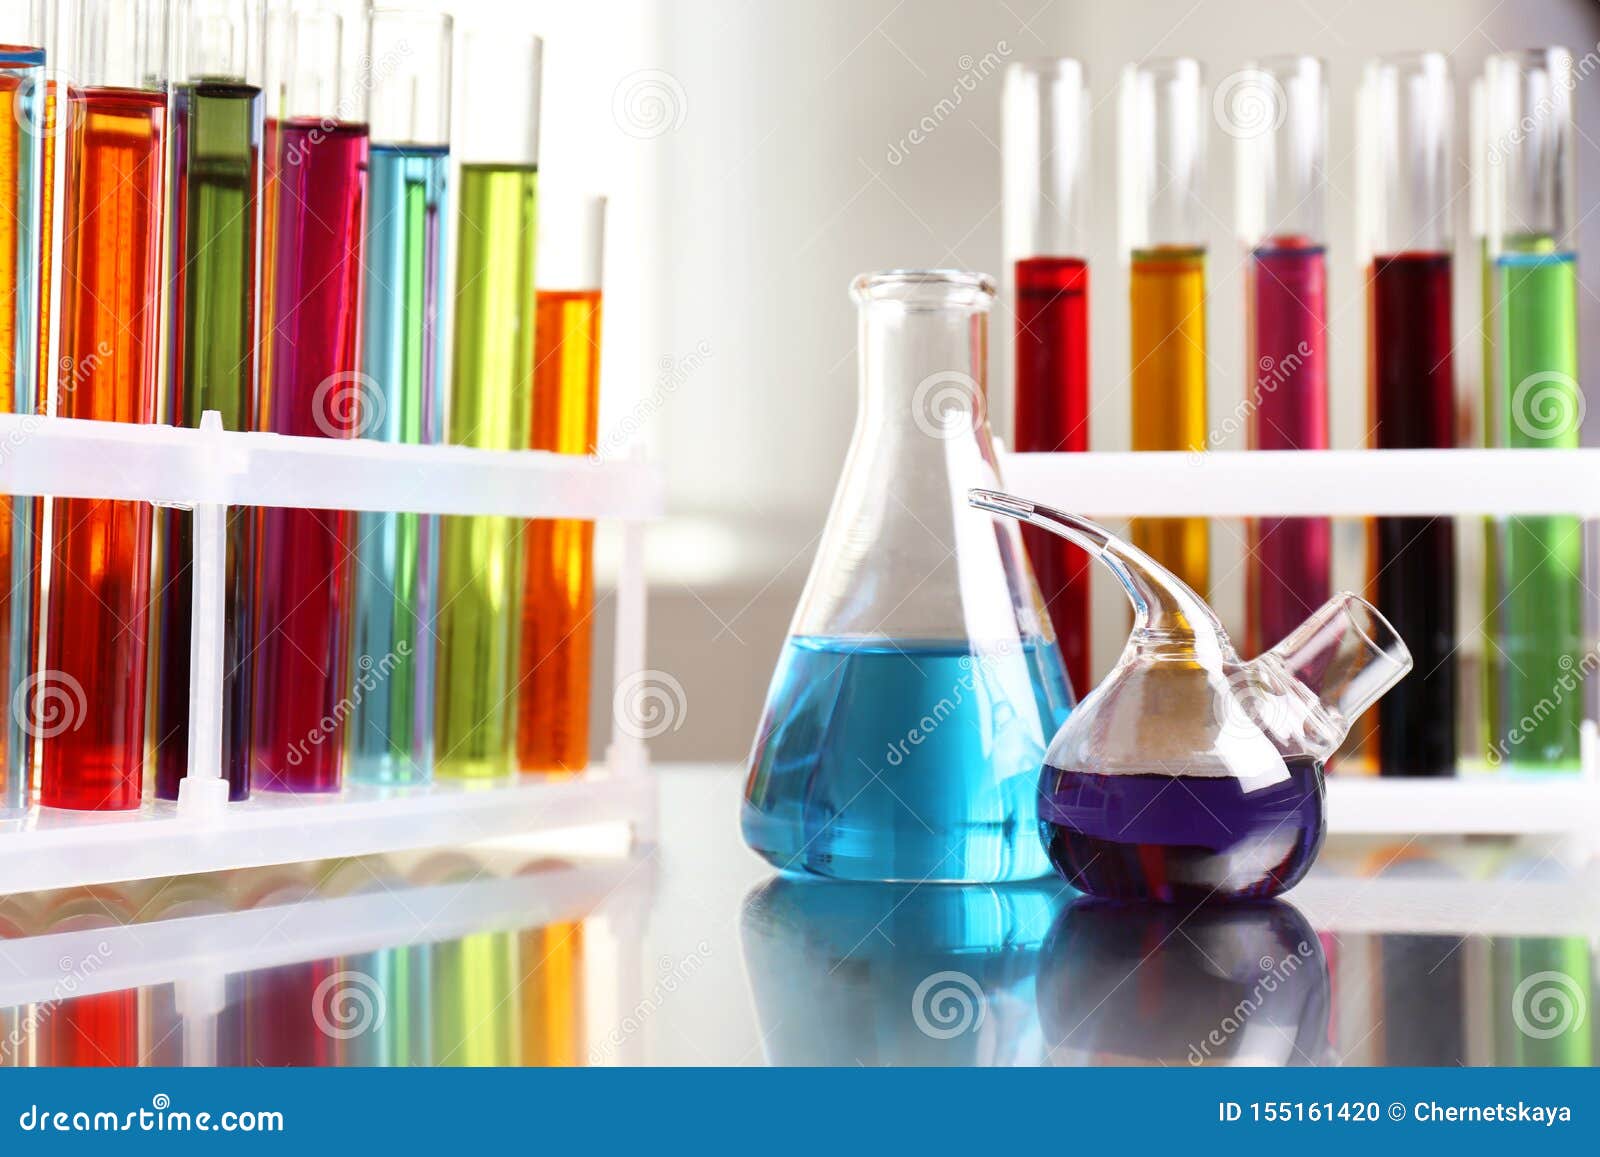 Цветная химия. Химия цвета. Цвета химических веществ. Цветные вещества в химии. Цвет химикатов.